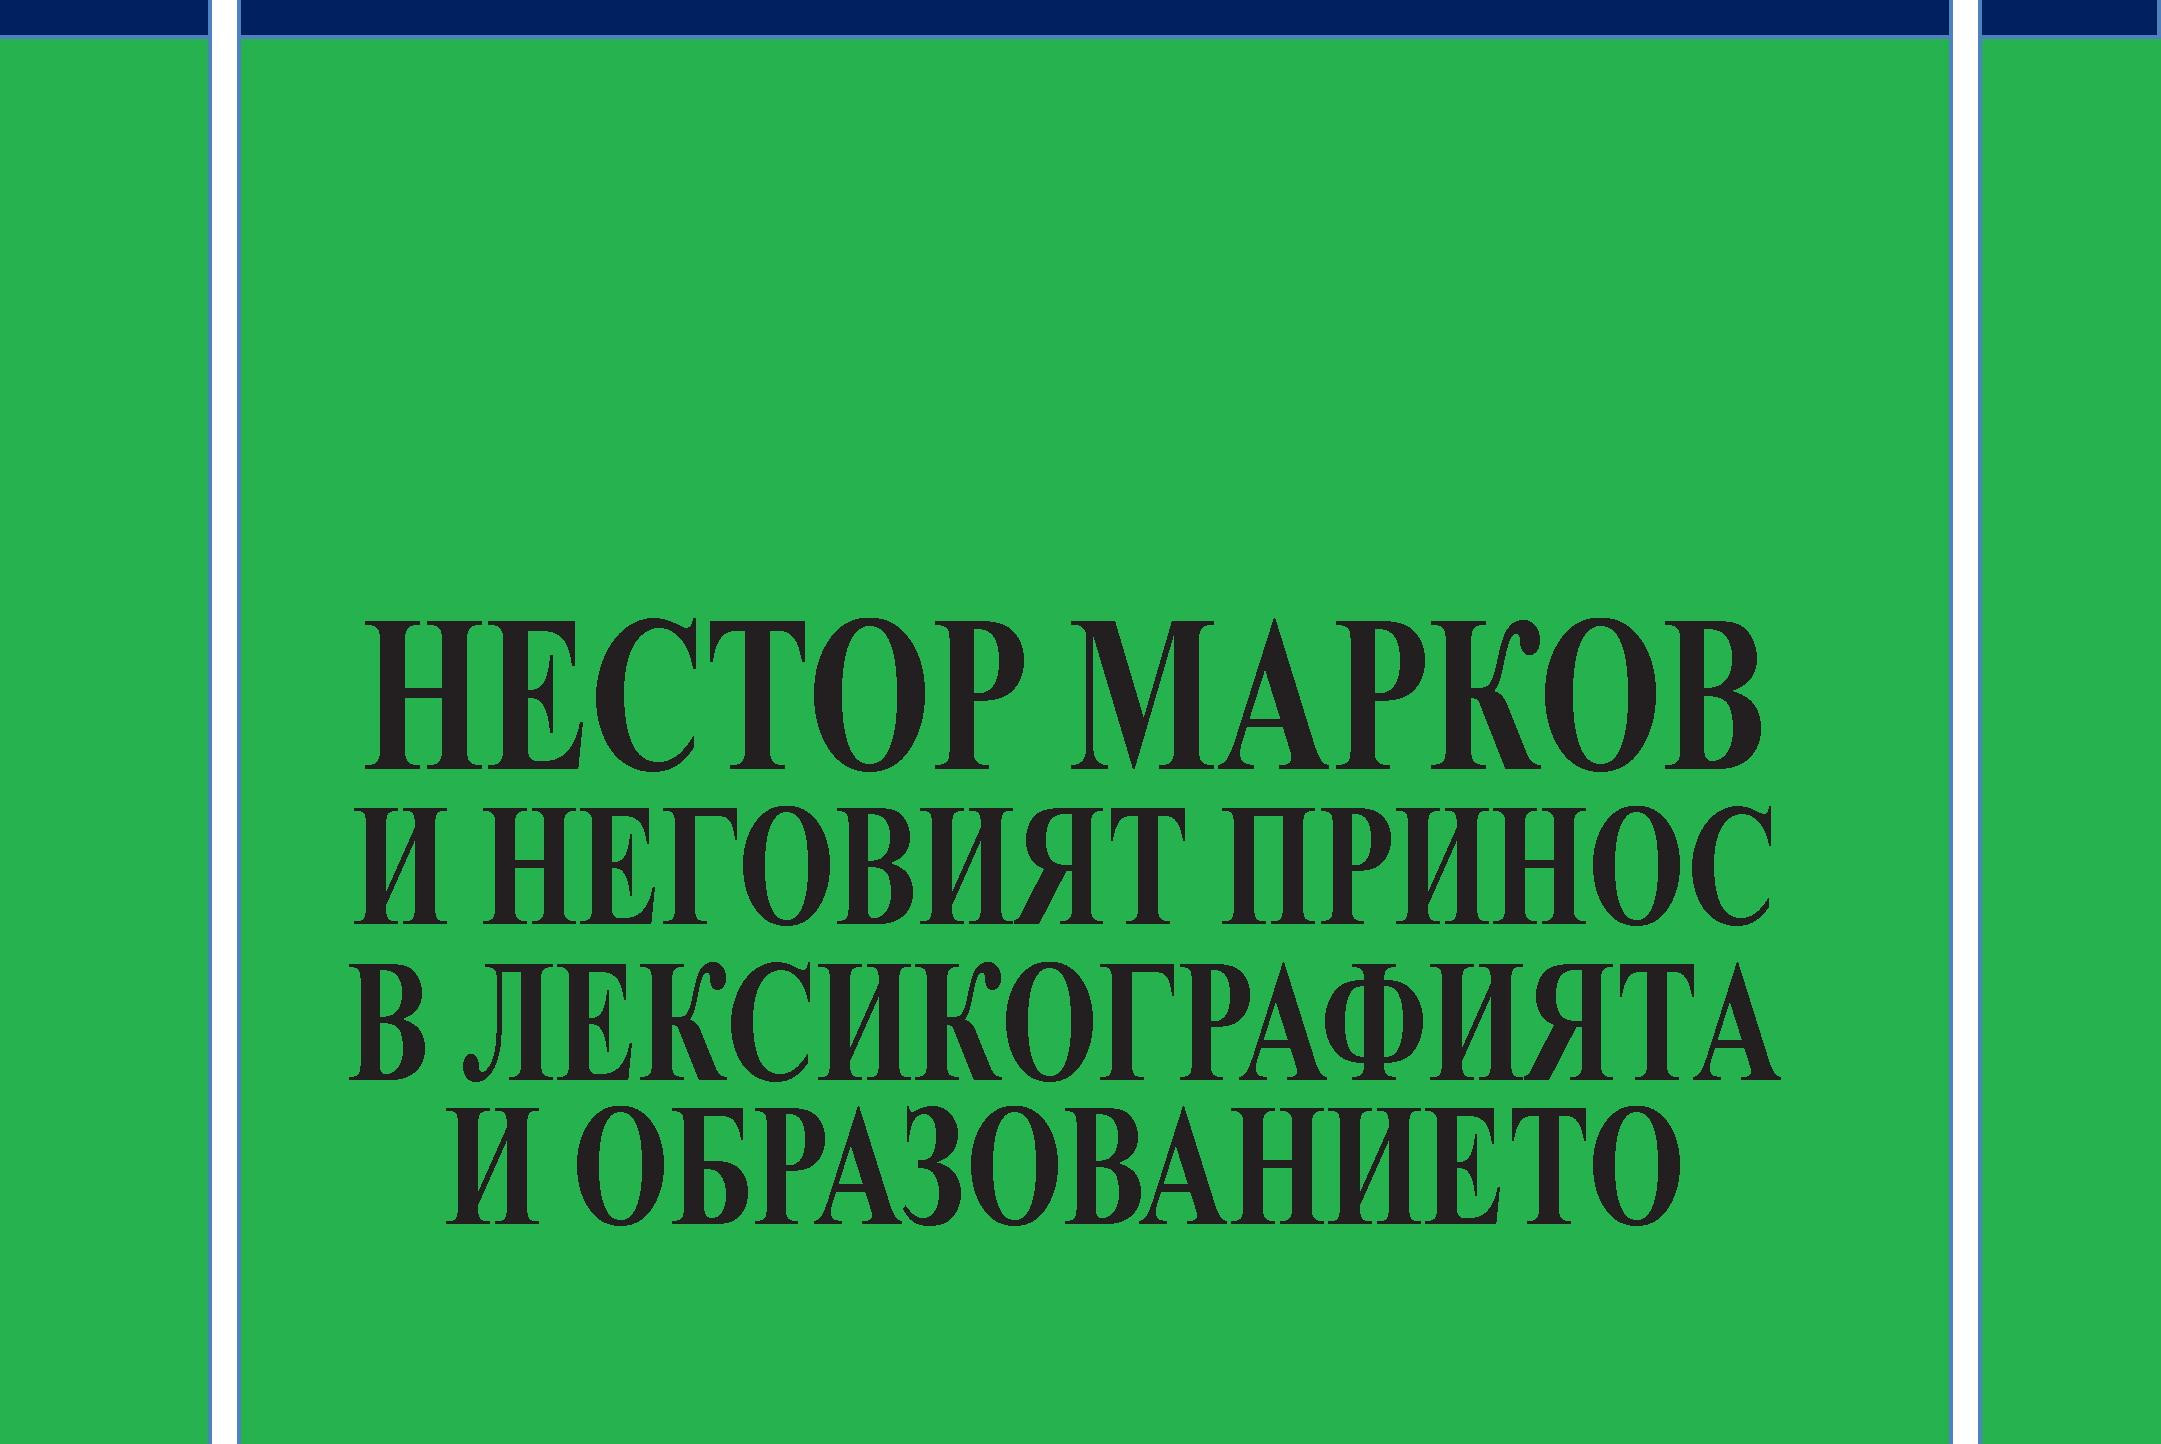 Излезе от печат сборникът „Нестор Марков и неговият принос в лексикографията и образованието“